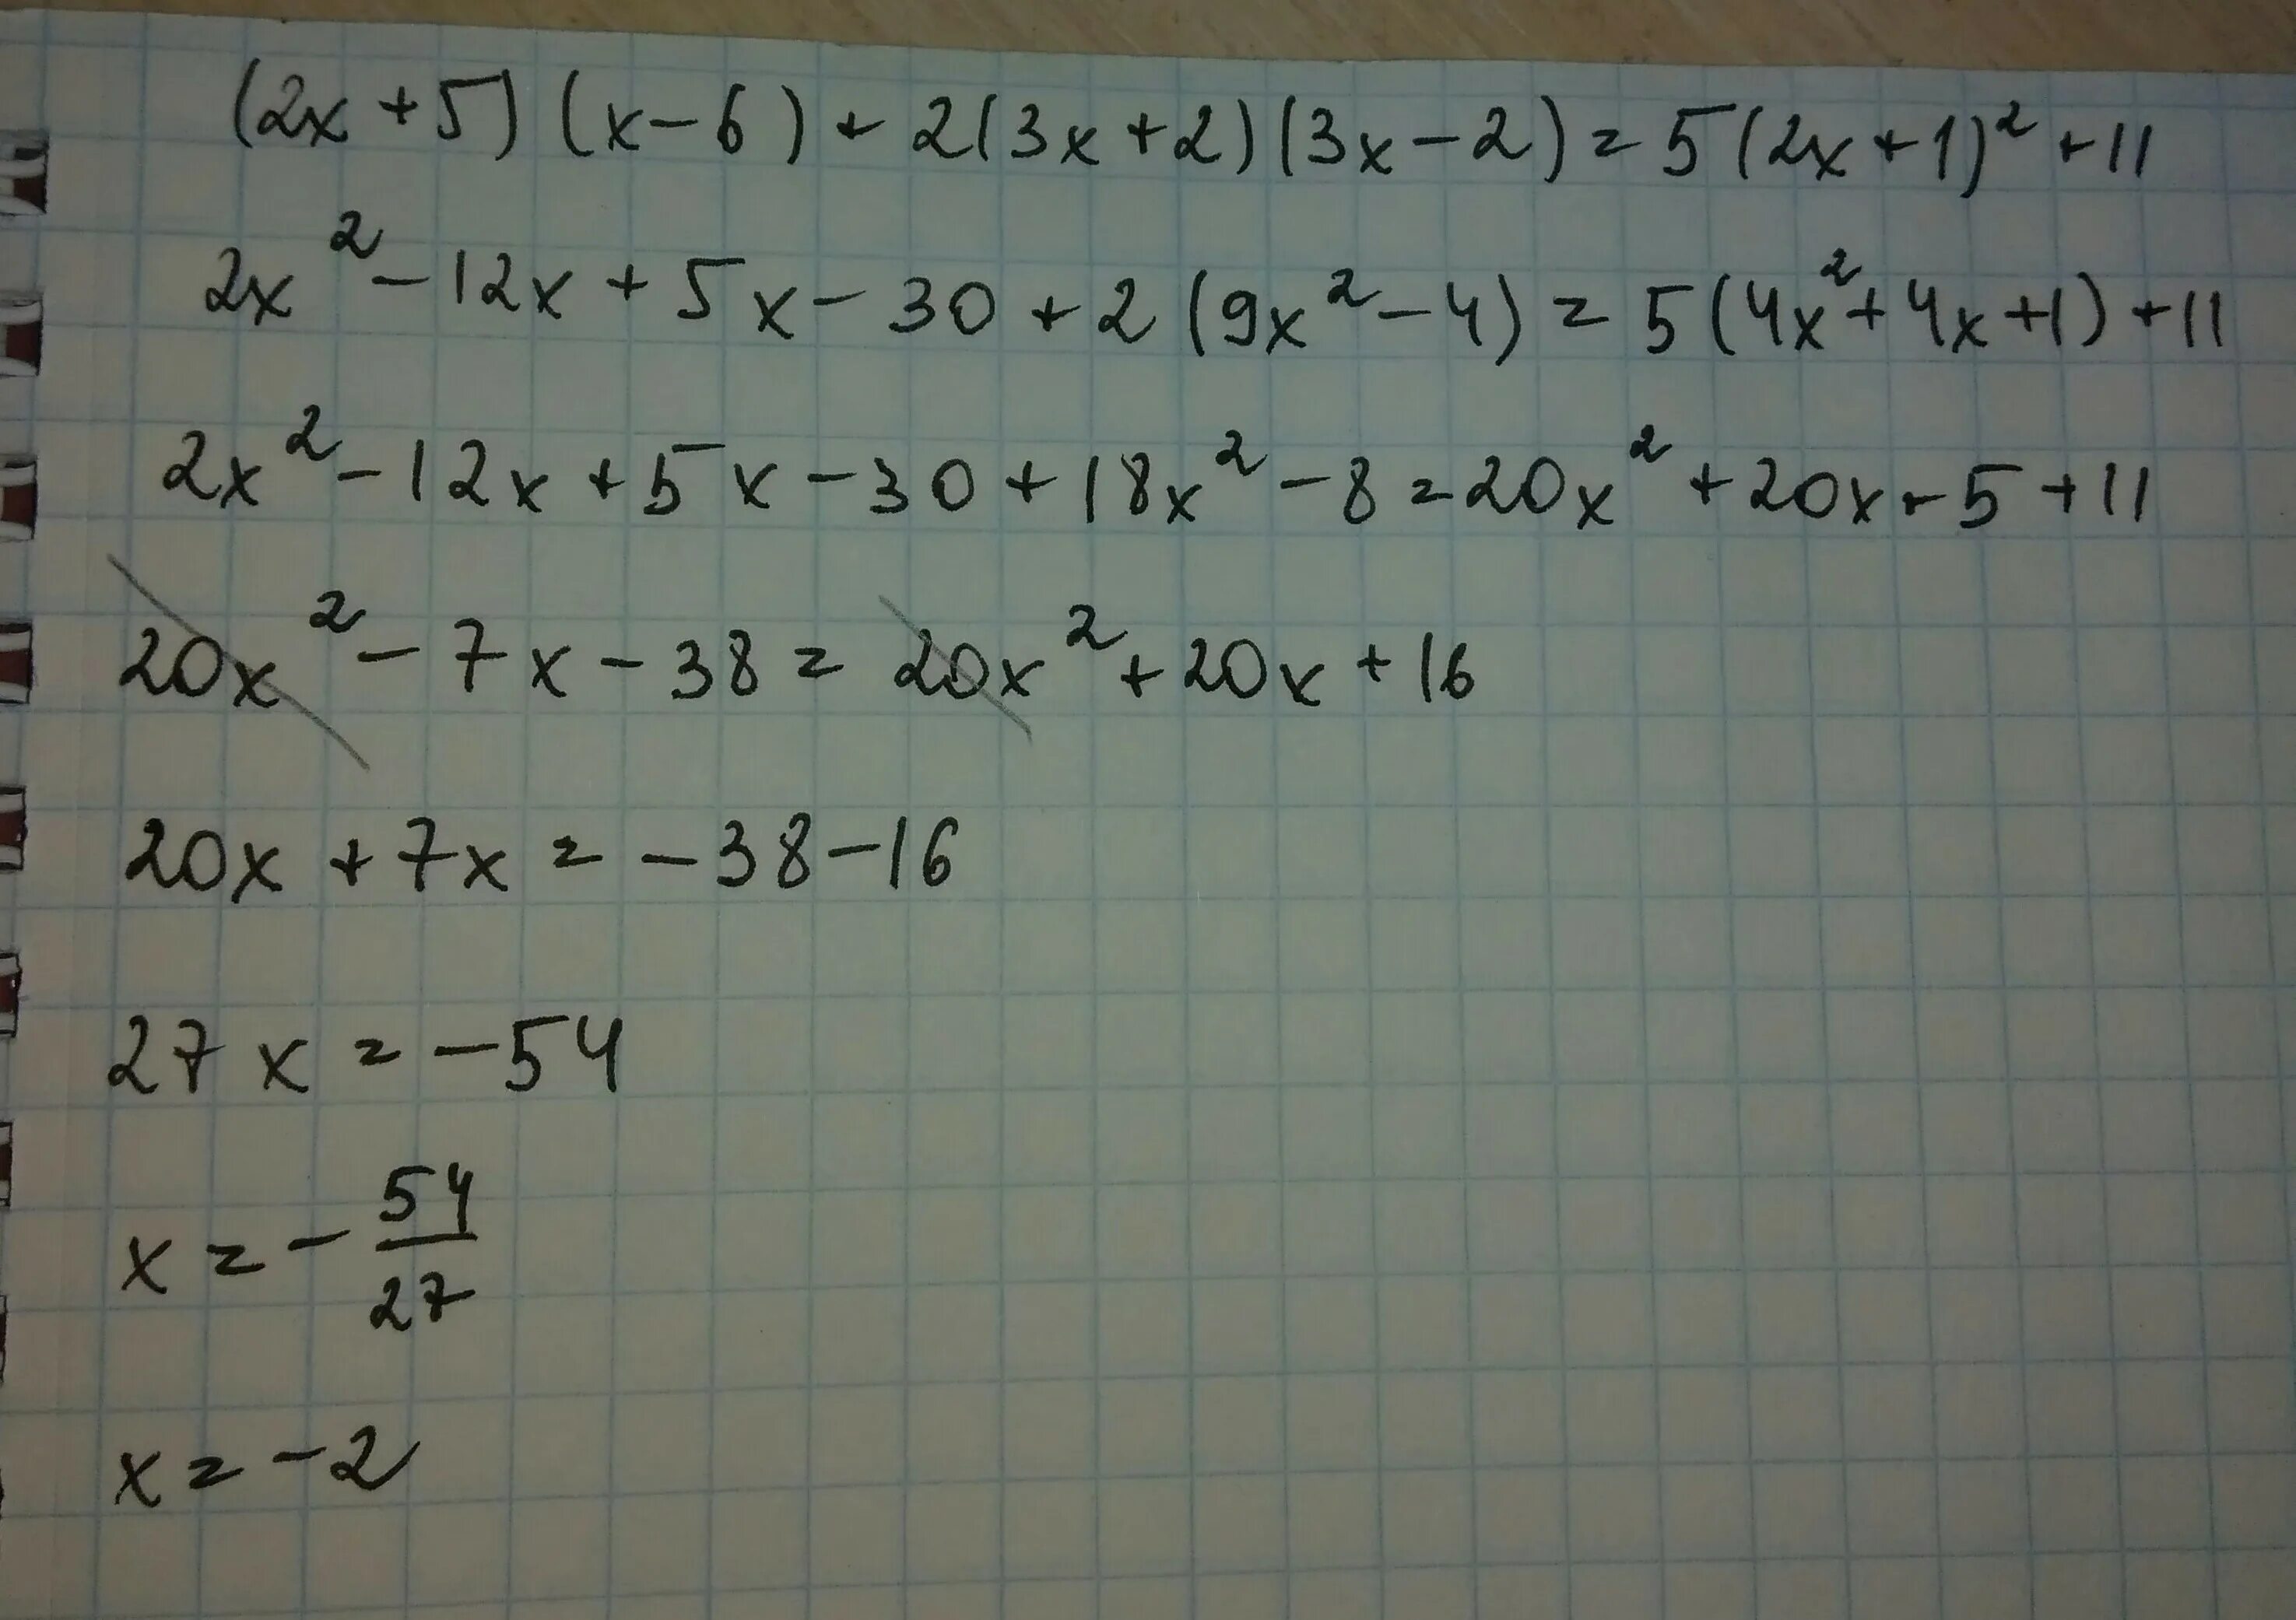 X квадрат 2x 6. 11x=6+5(2x-1). 6(X+5)+X=2. (2x-5)2(x-5)=(2x-5)(x-5)2. (3x-6)2(x-6)=(3x-6)(x-6)2.